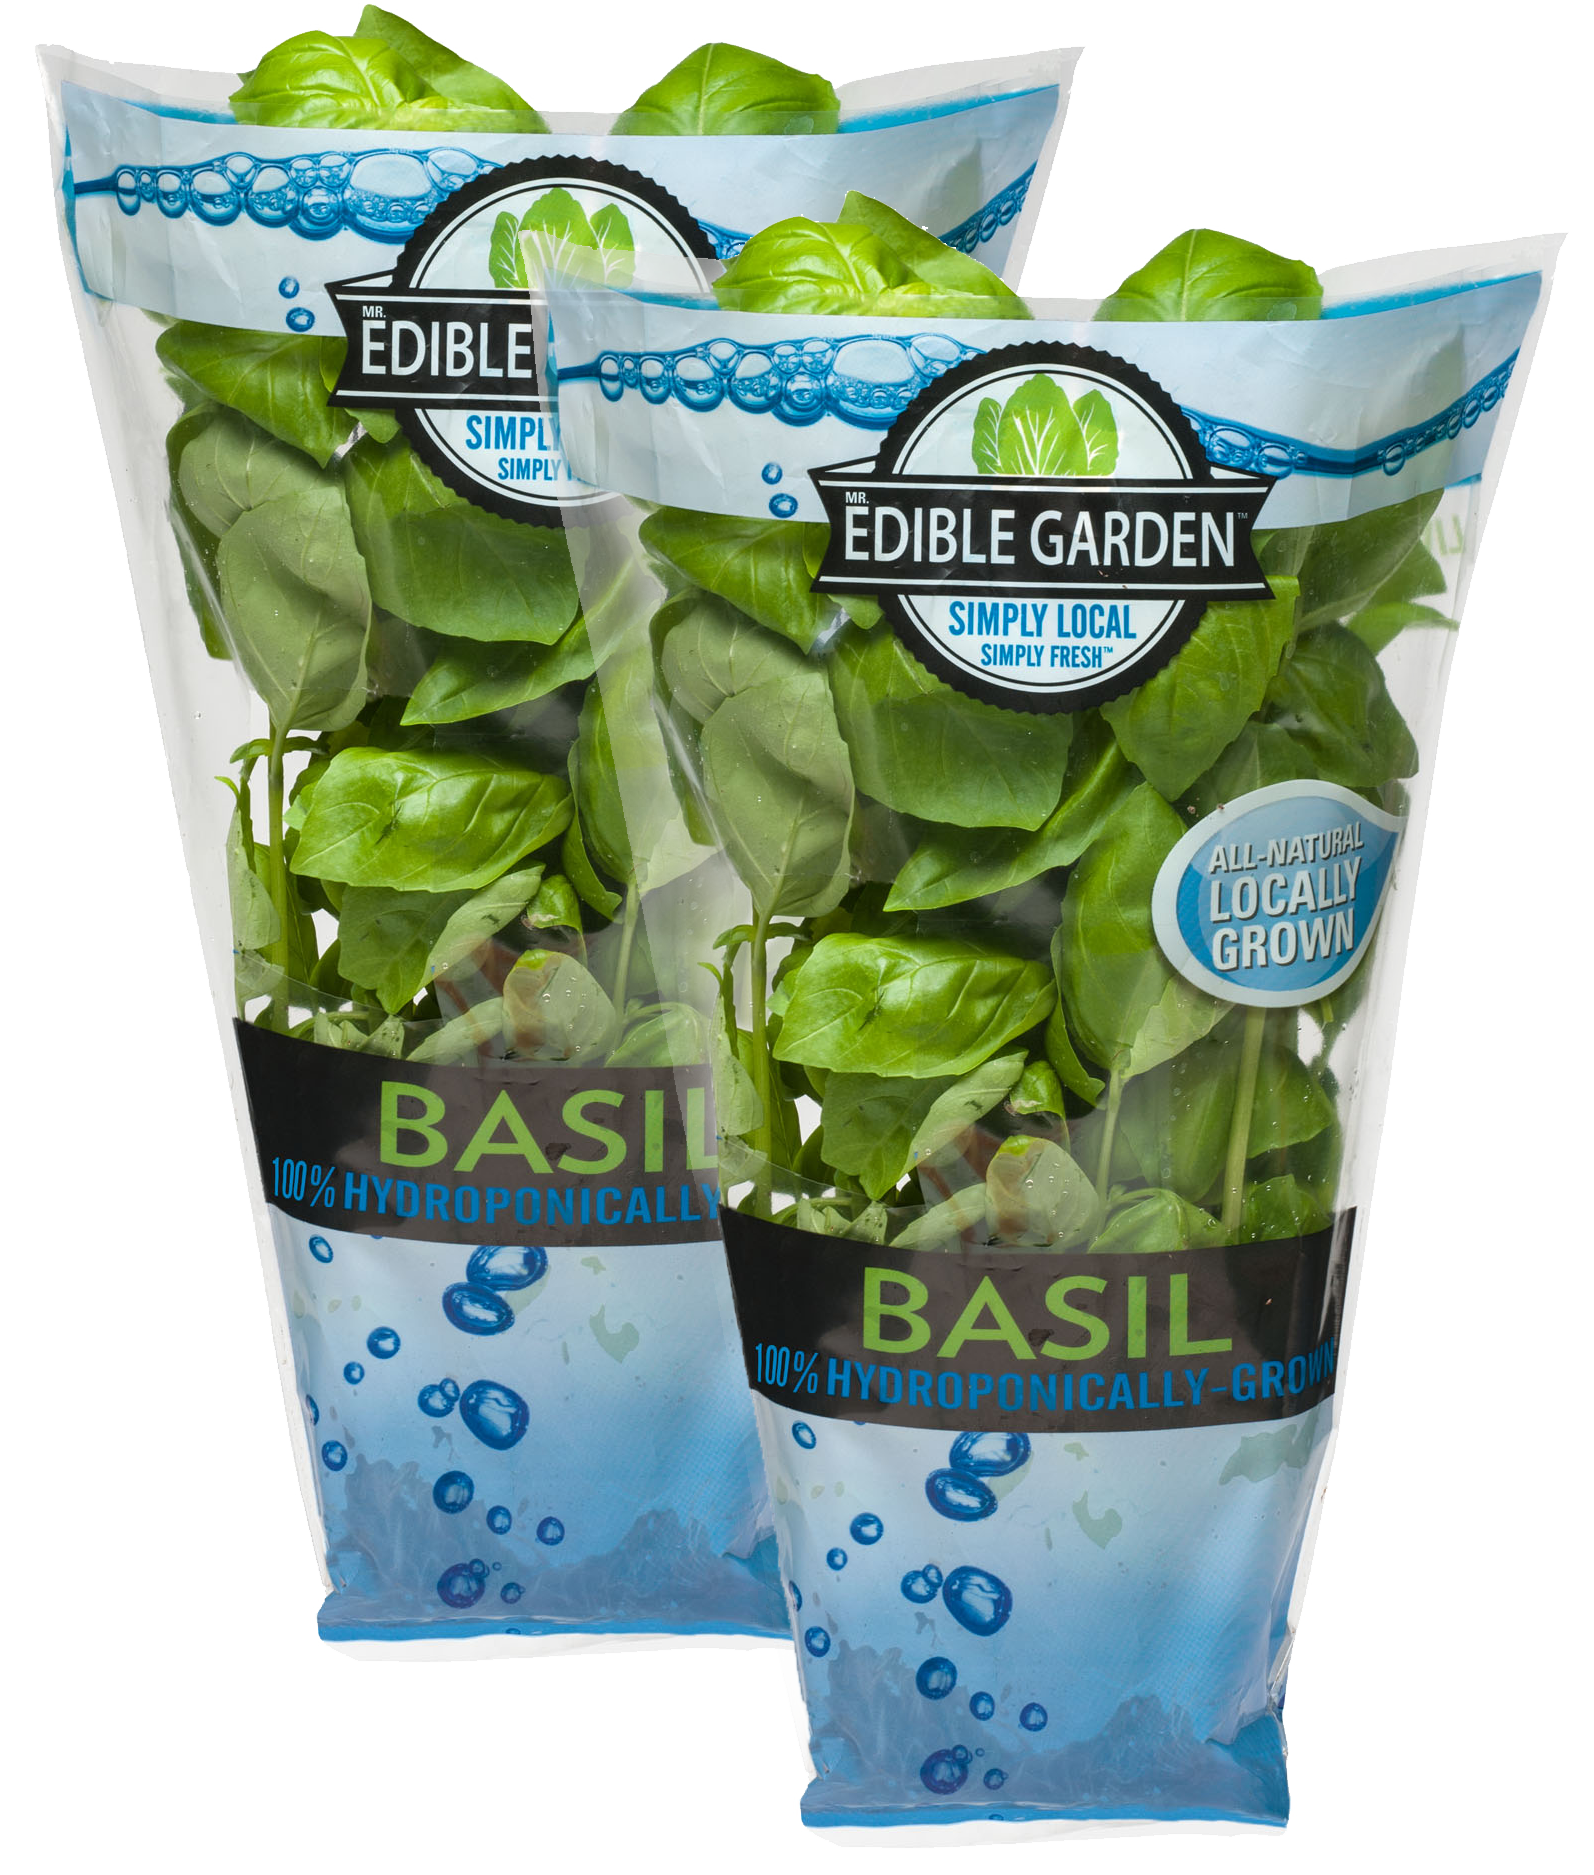 Living Fresh Basil :: Edible Garden Corp.